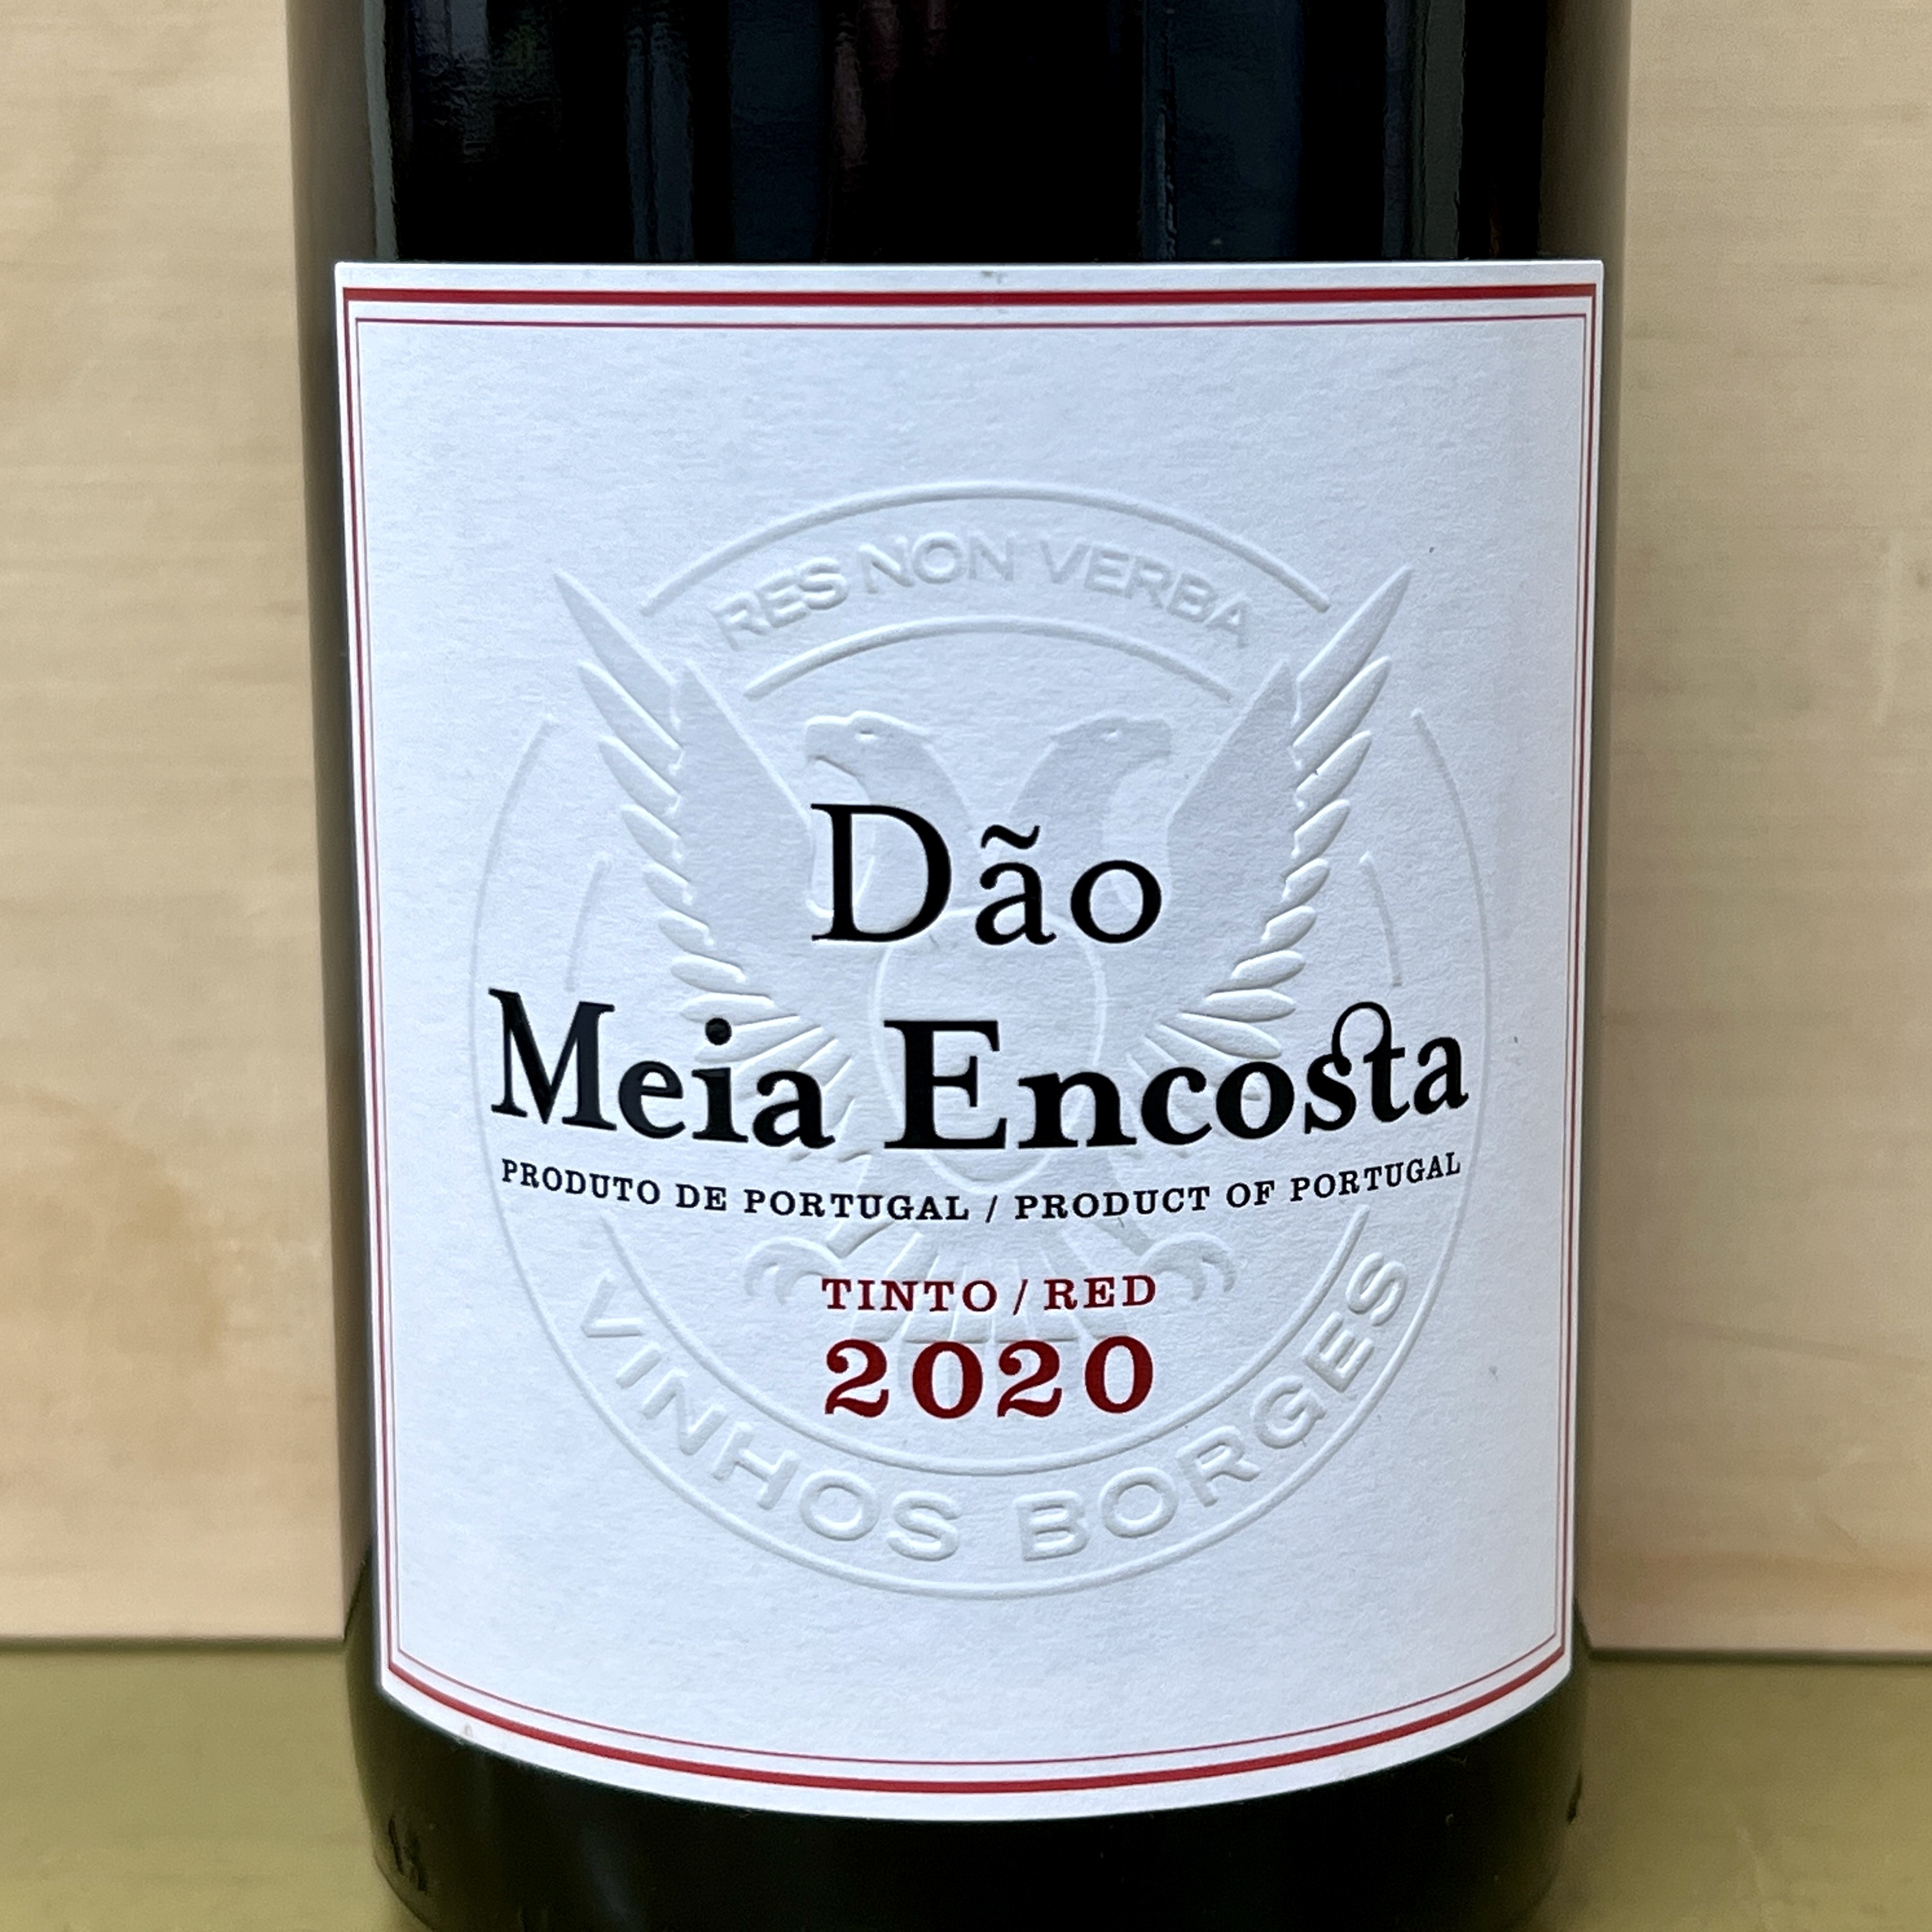 Dao Meia Tinto red Encosta 2020 - Click Image to Close